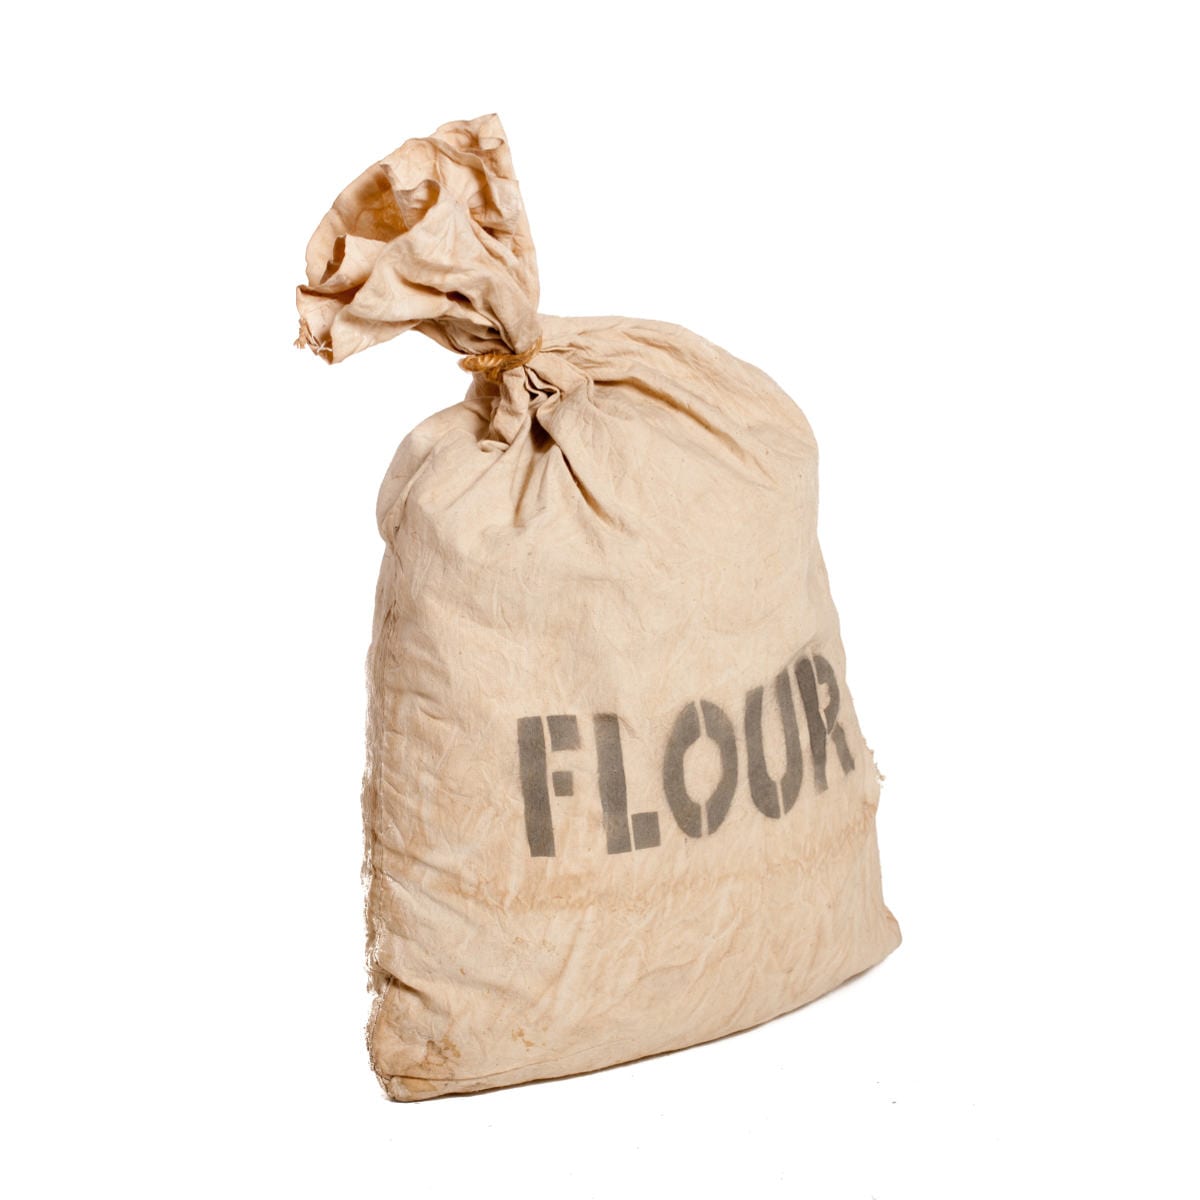 Sack Of Flour